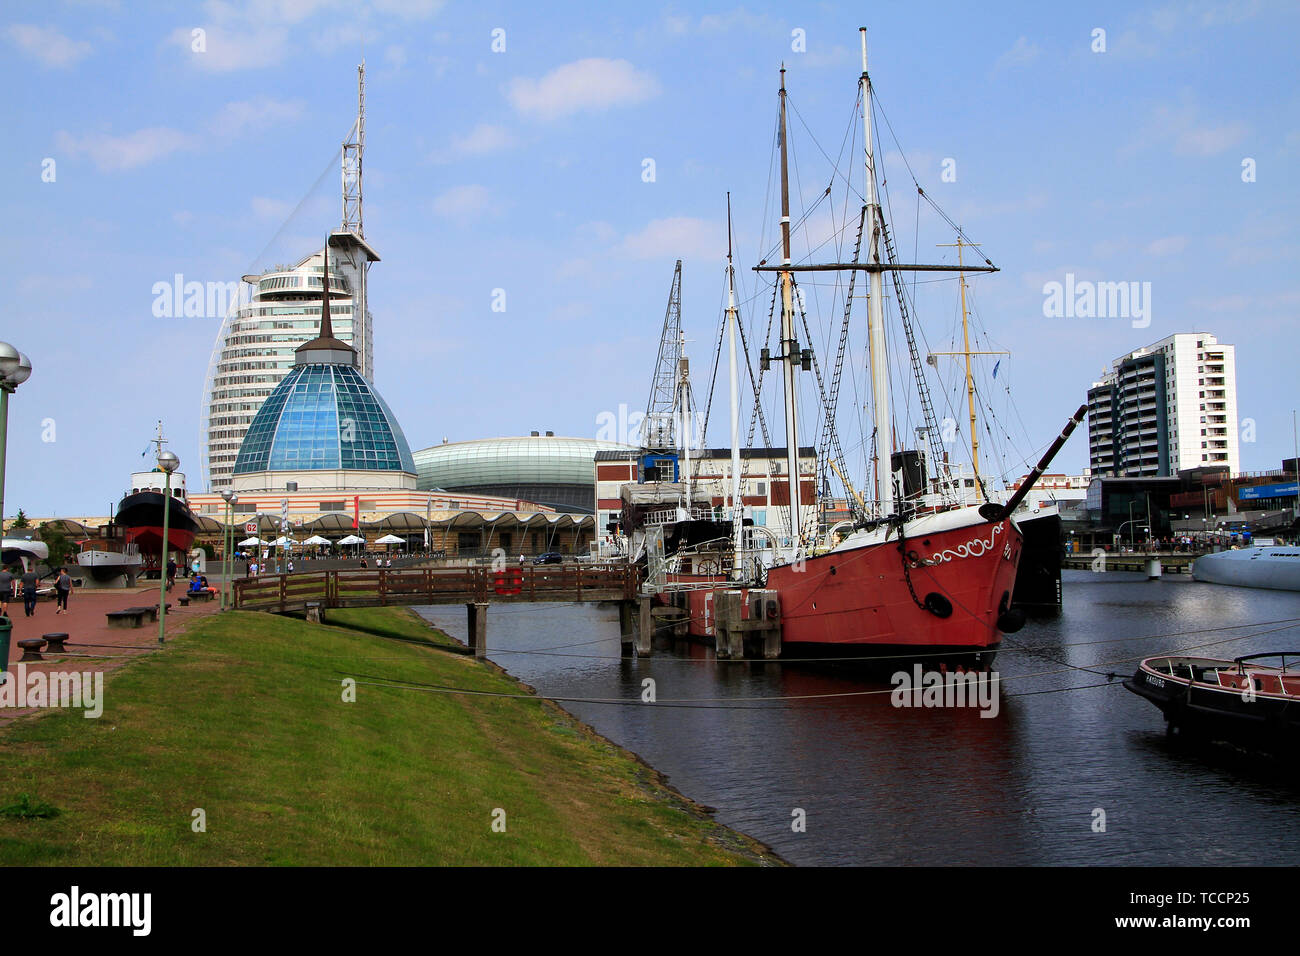 Bremerhaven mit Alten Hafen, Mediterraneo, dem Hotel Atlantic und dem Klimahaus. Bremerhaven, Bremen, Deutschland, Europa Date: 16. Juli, 2018 Stock Photo